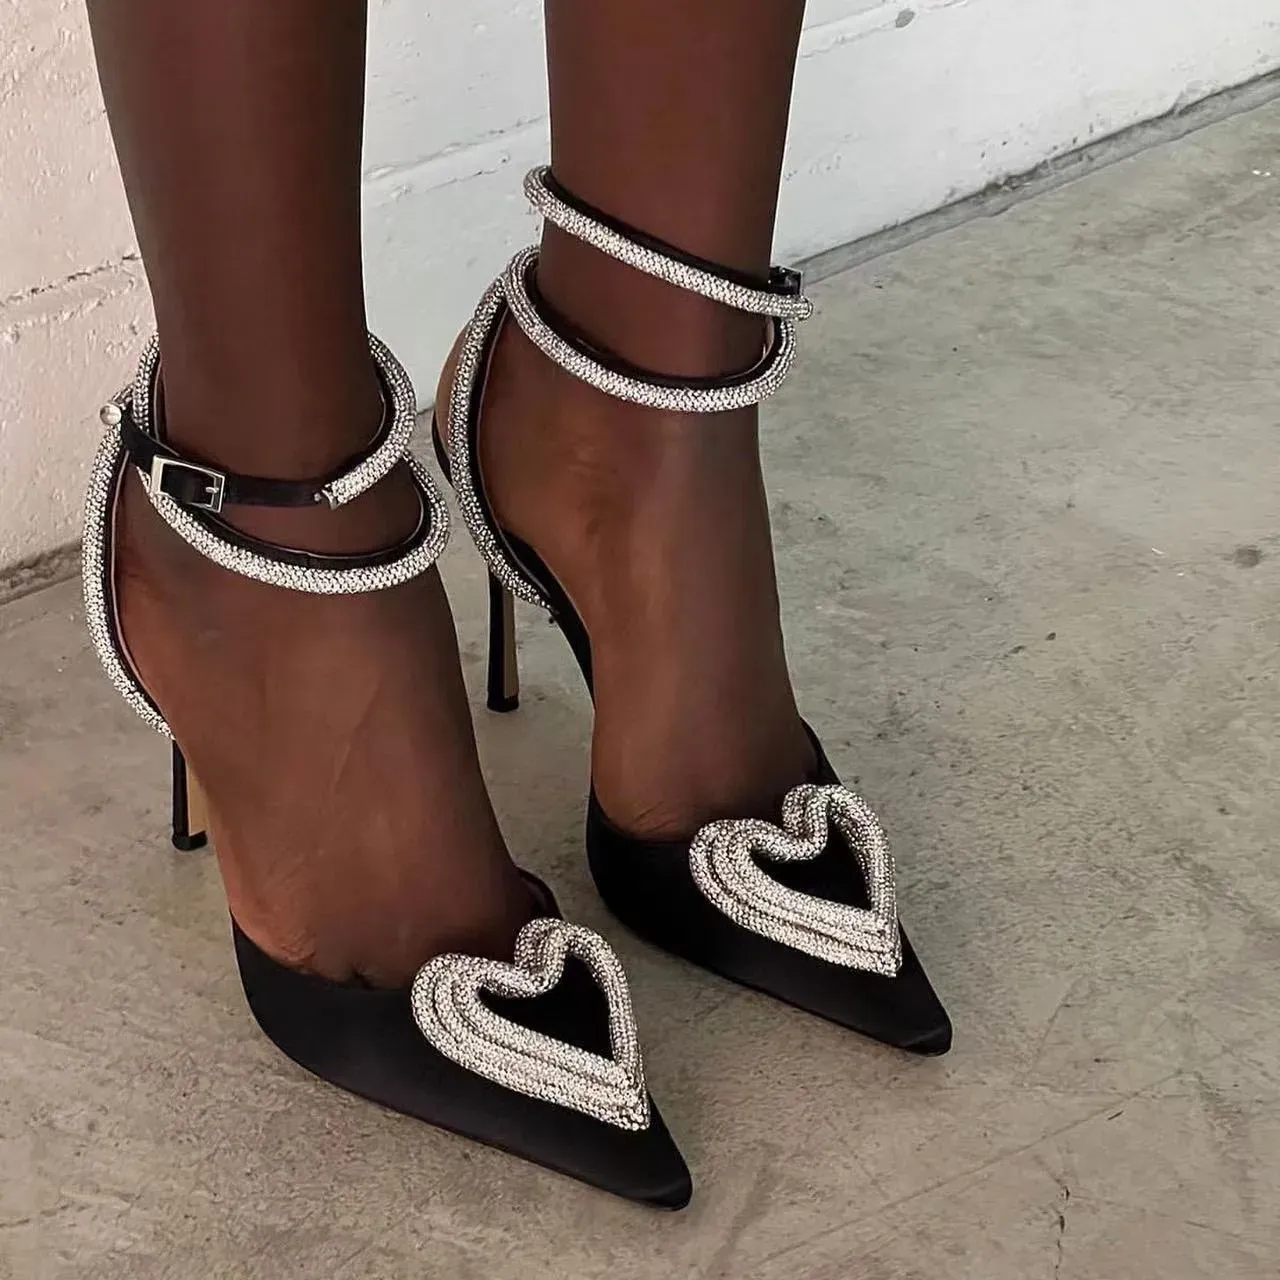 H Sandal Triple Heart Platform Pumps Satin Pointed Chunky Heel Dress Shoes Crystal Embellished Evening Shoe